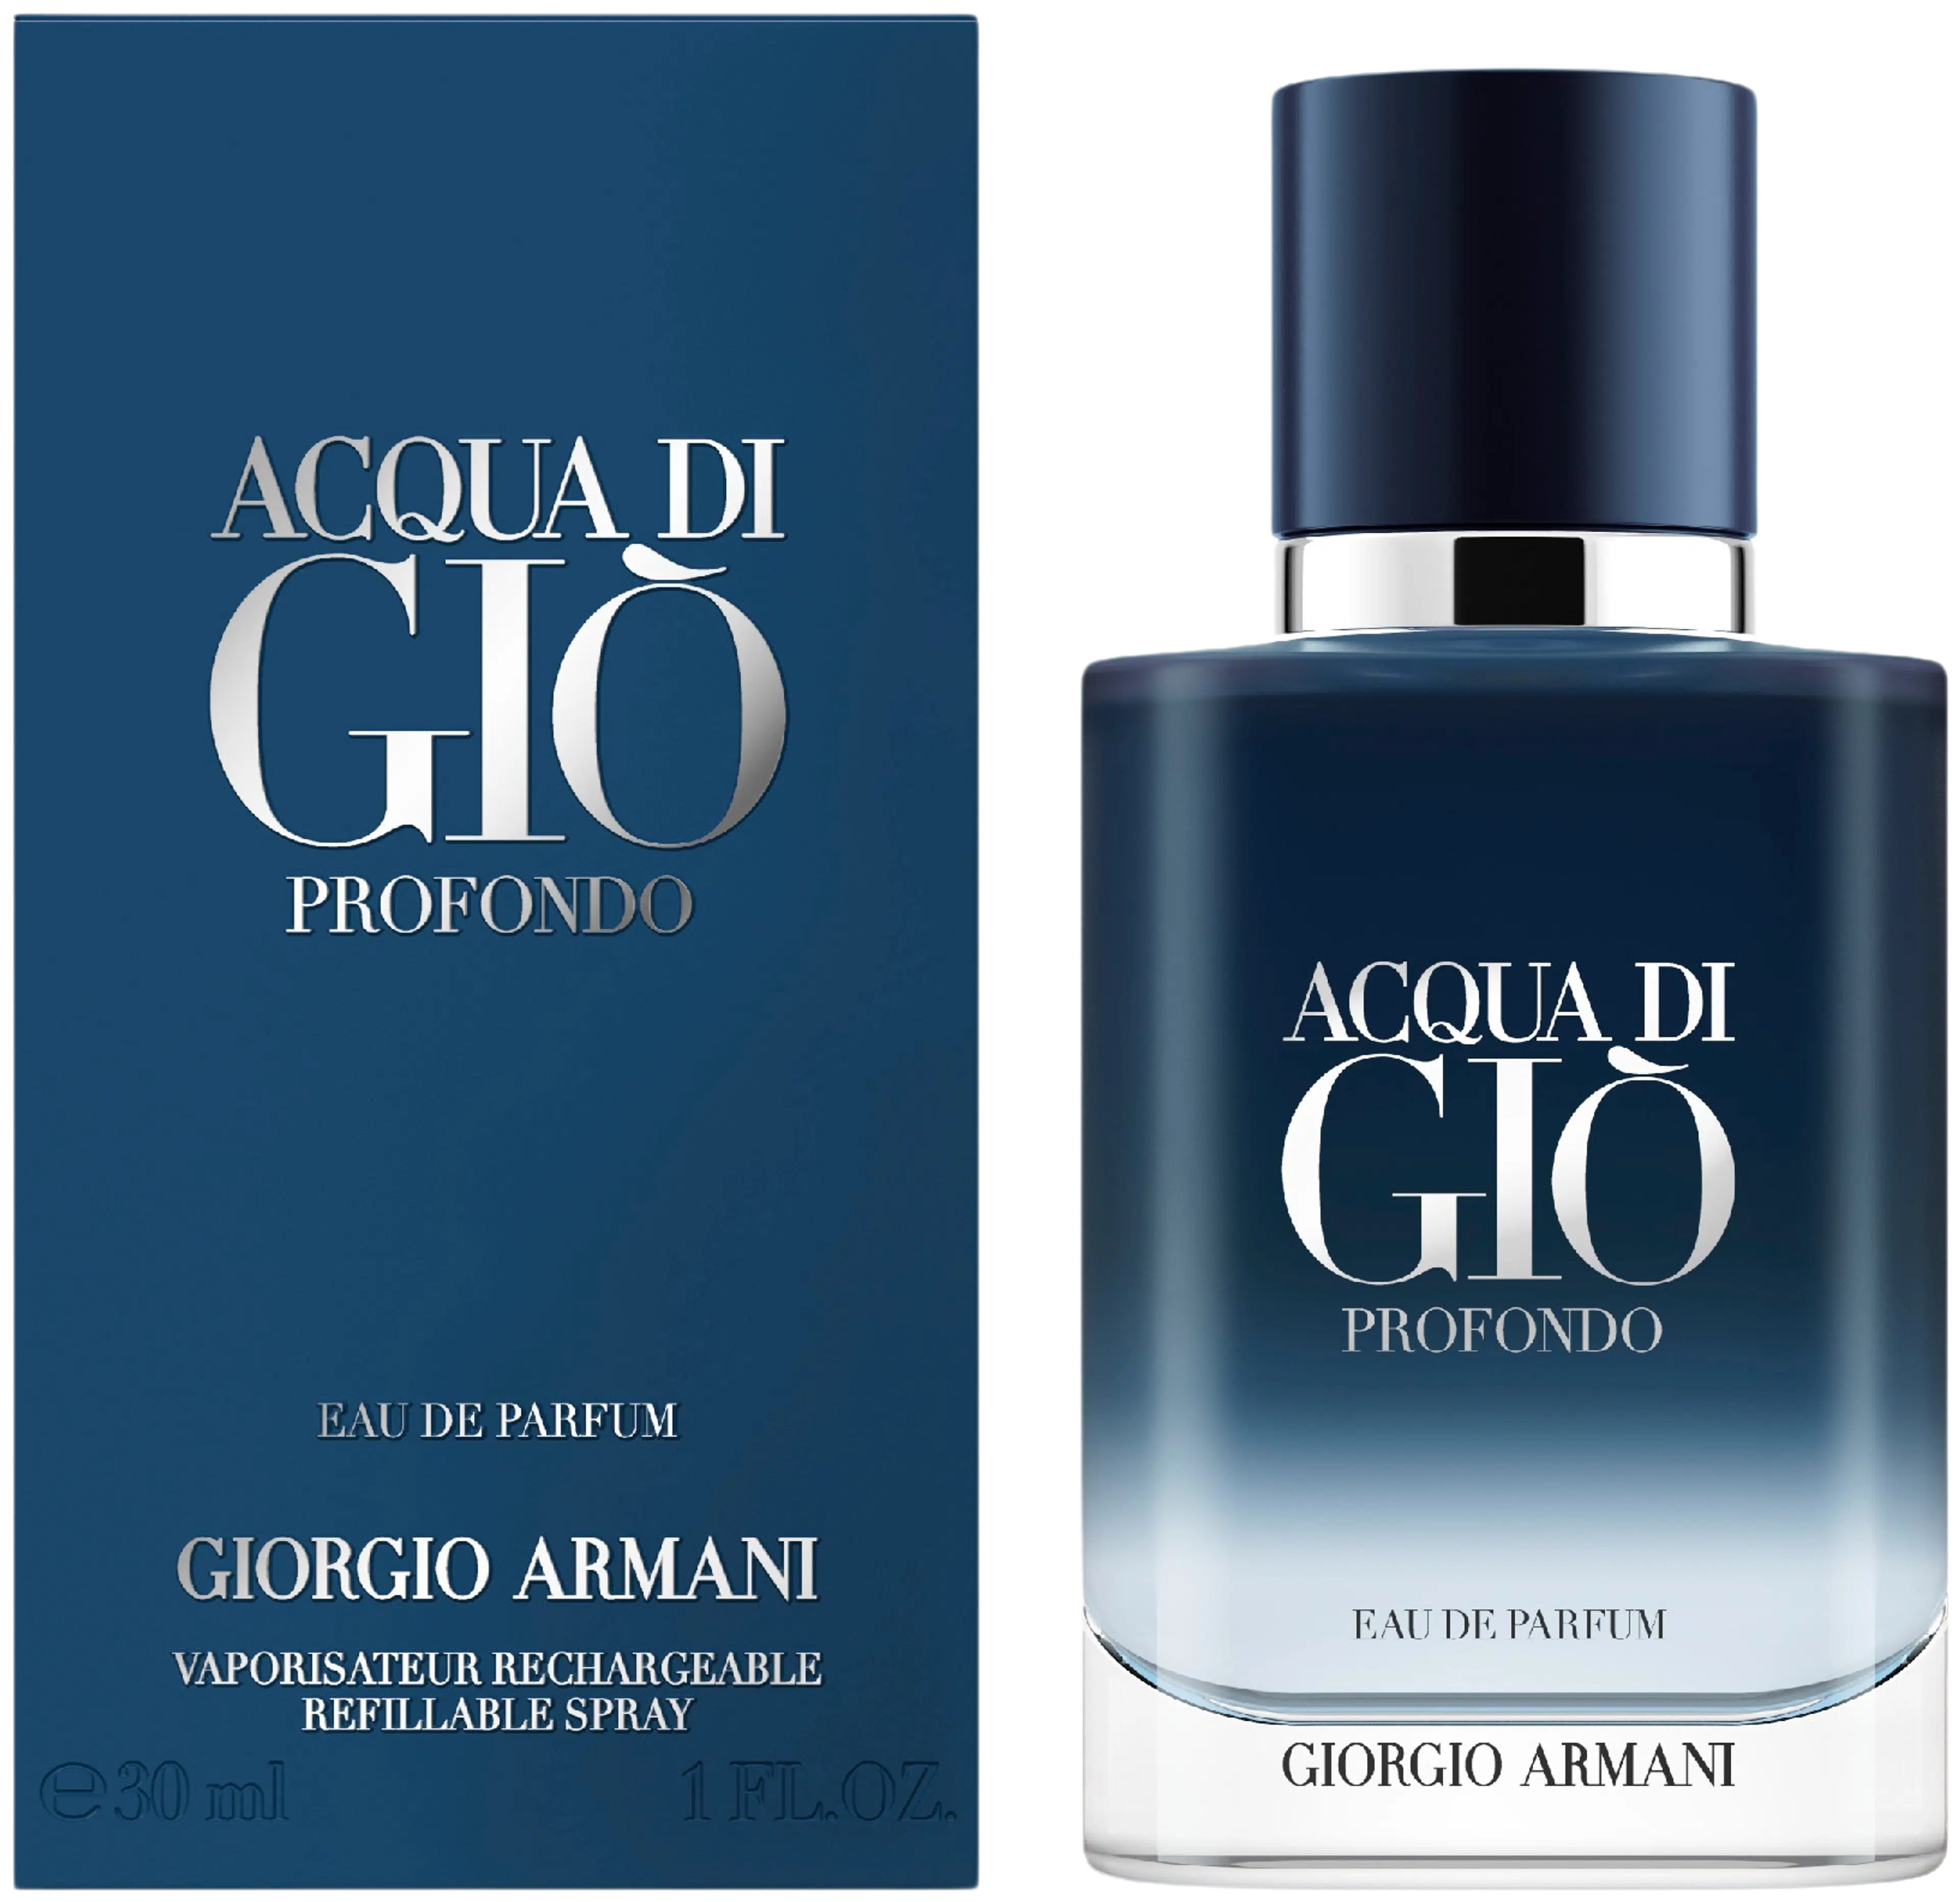 Giorgio Armani Acqua di Gio Profondo EdP tuoksu 30 ml